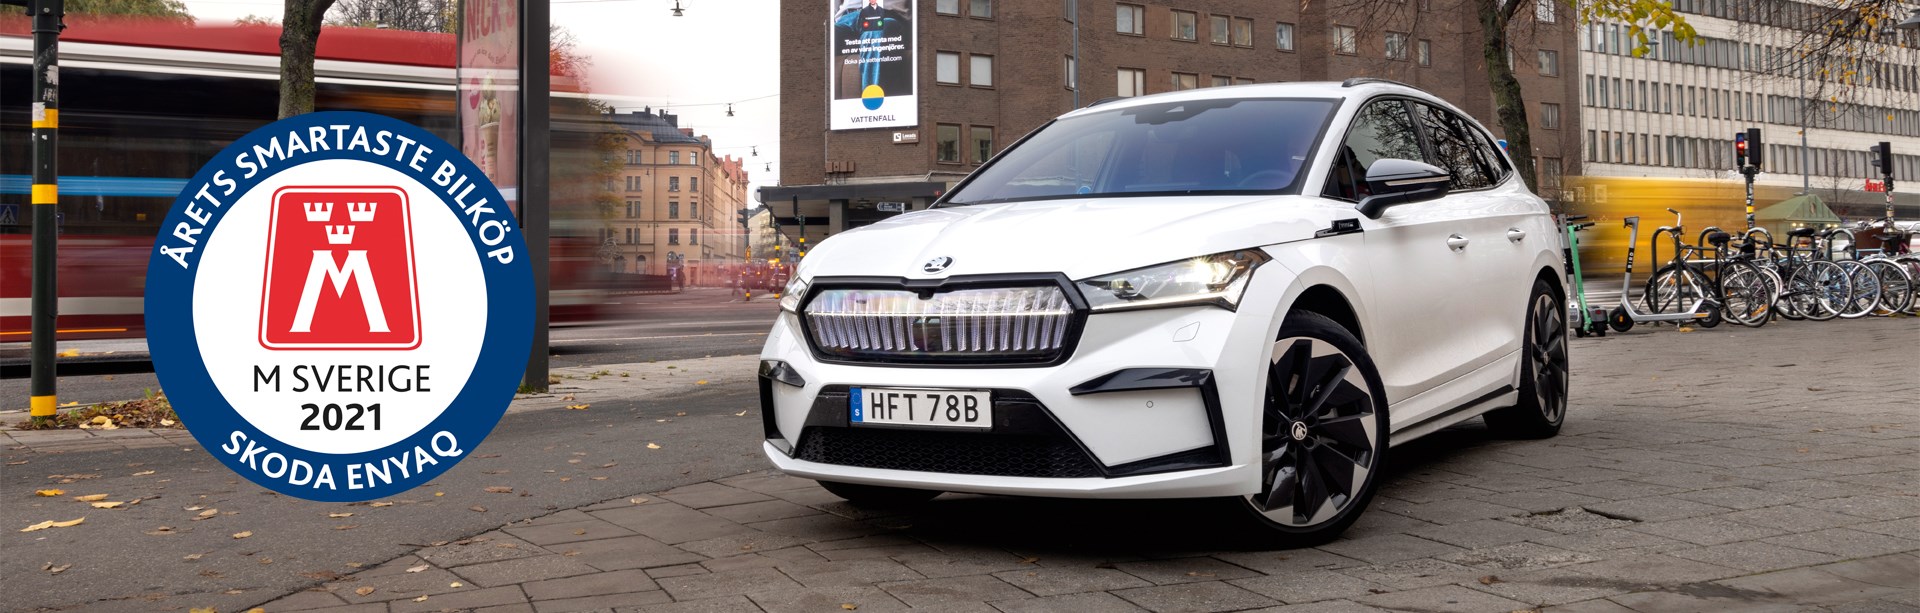 M Sverige utser Årets smartaste bilköp 2021